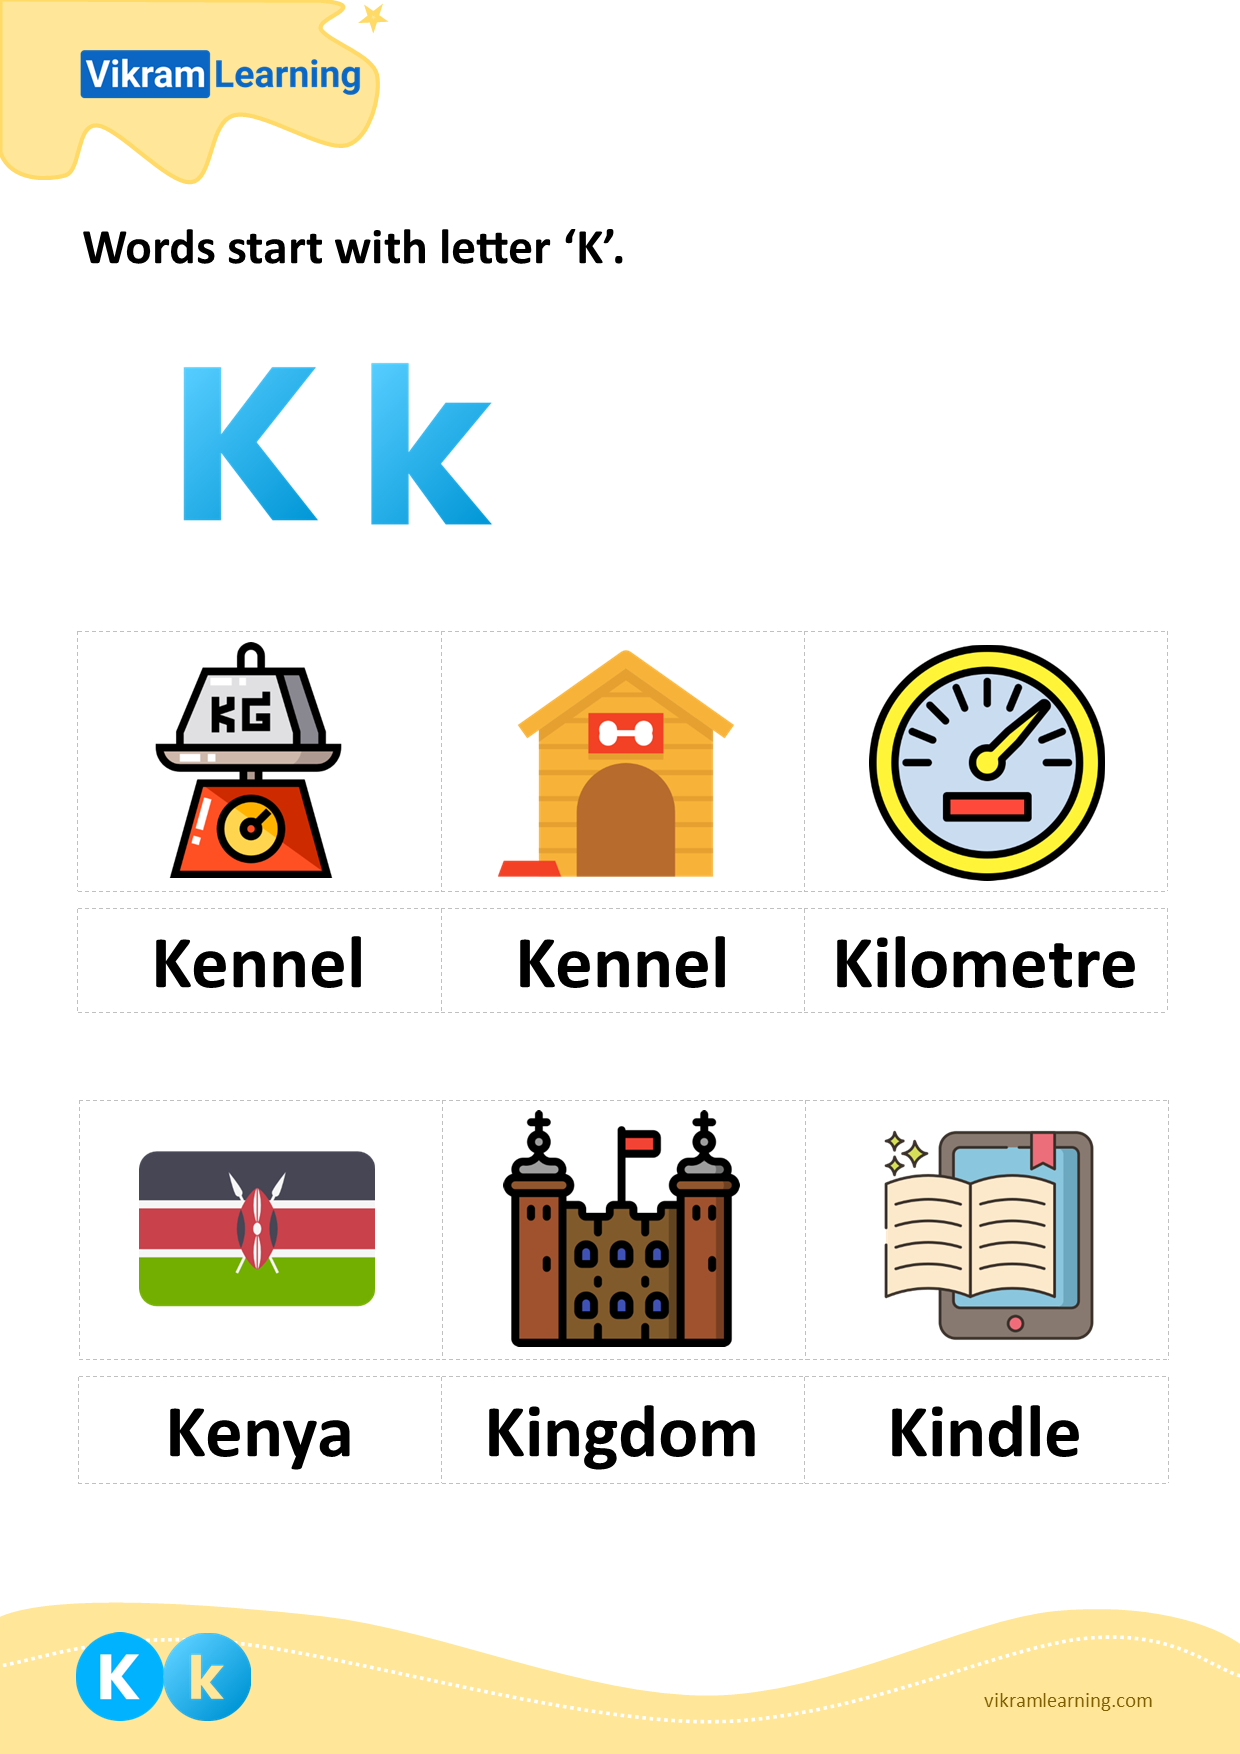 Download words start with letter 'k' worksheets